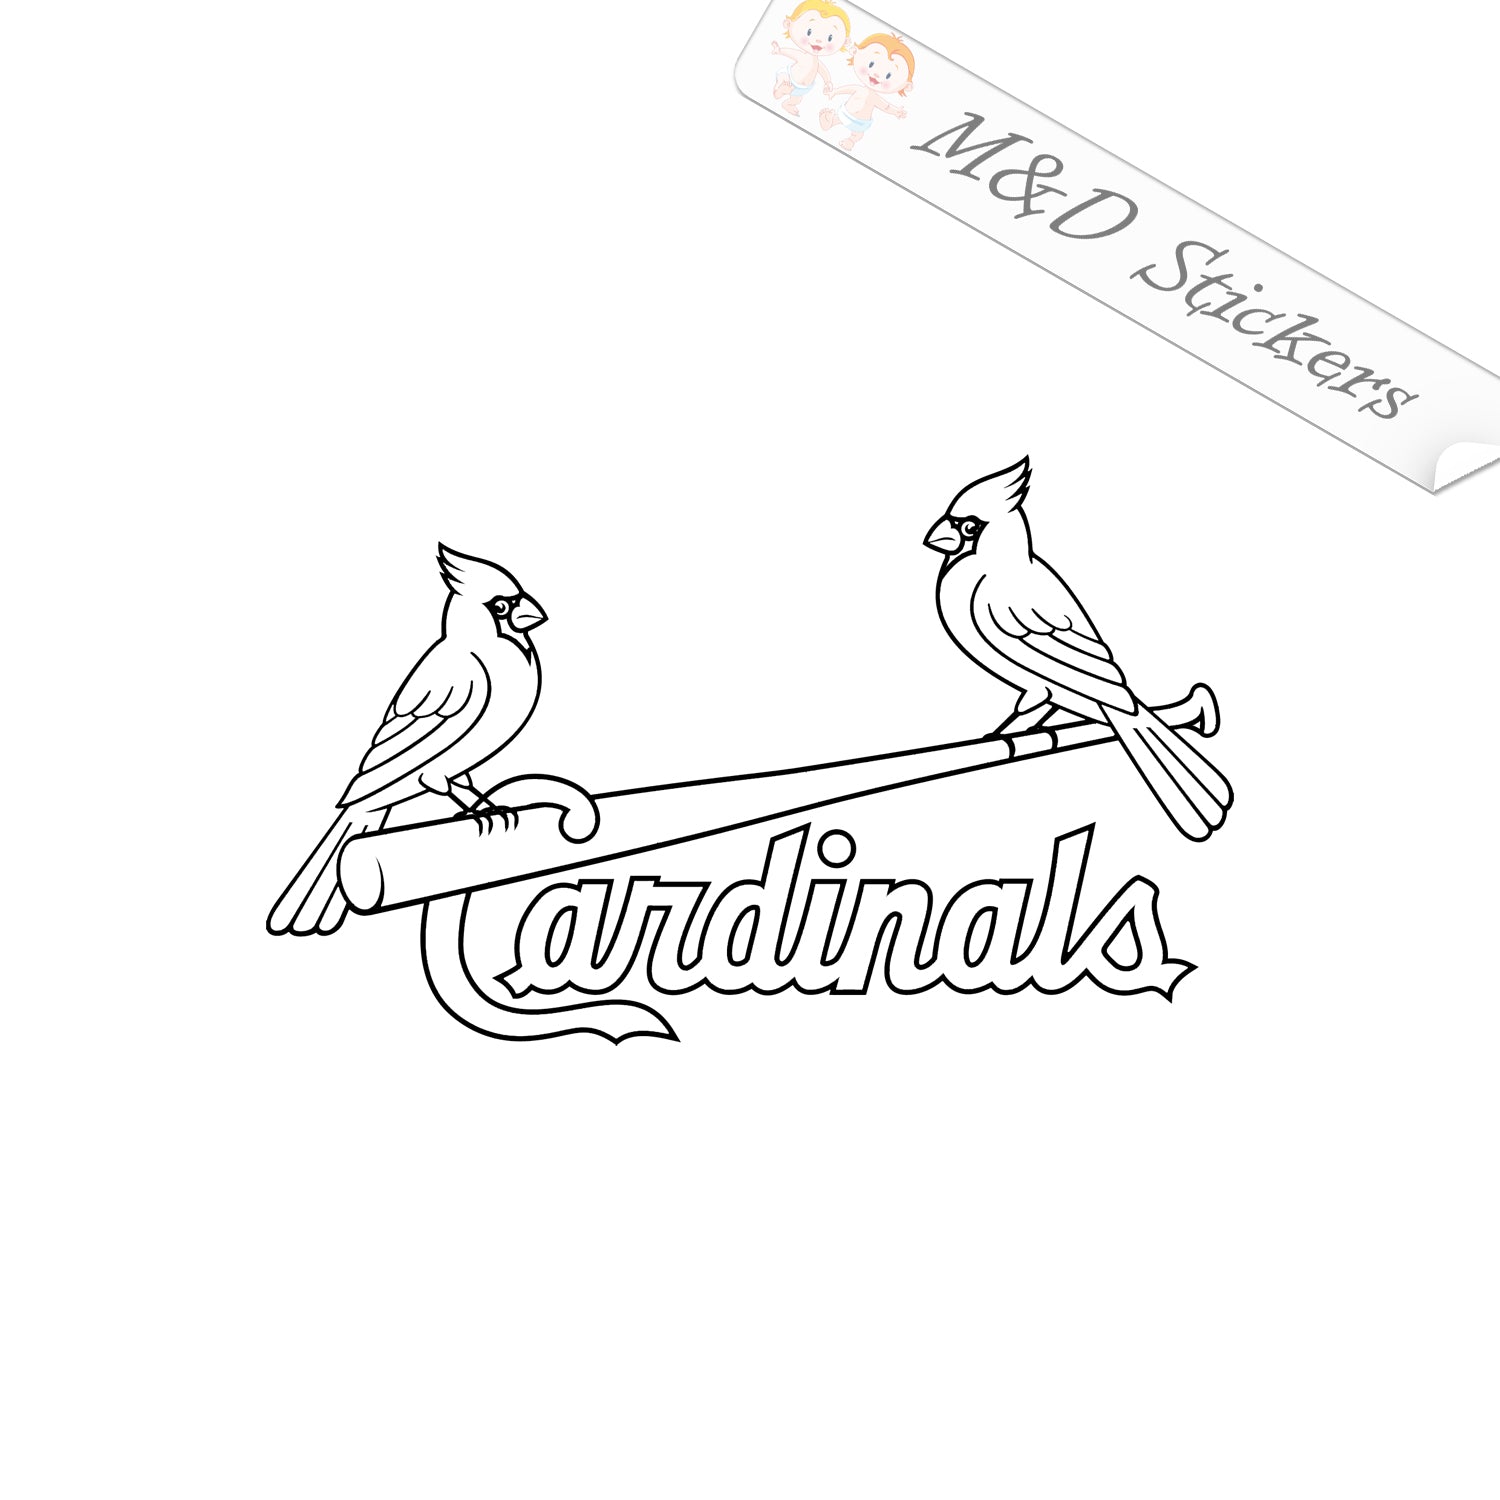 St. Louis Cardinals Sticker Decal Vinyl 12 17 